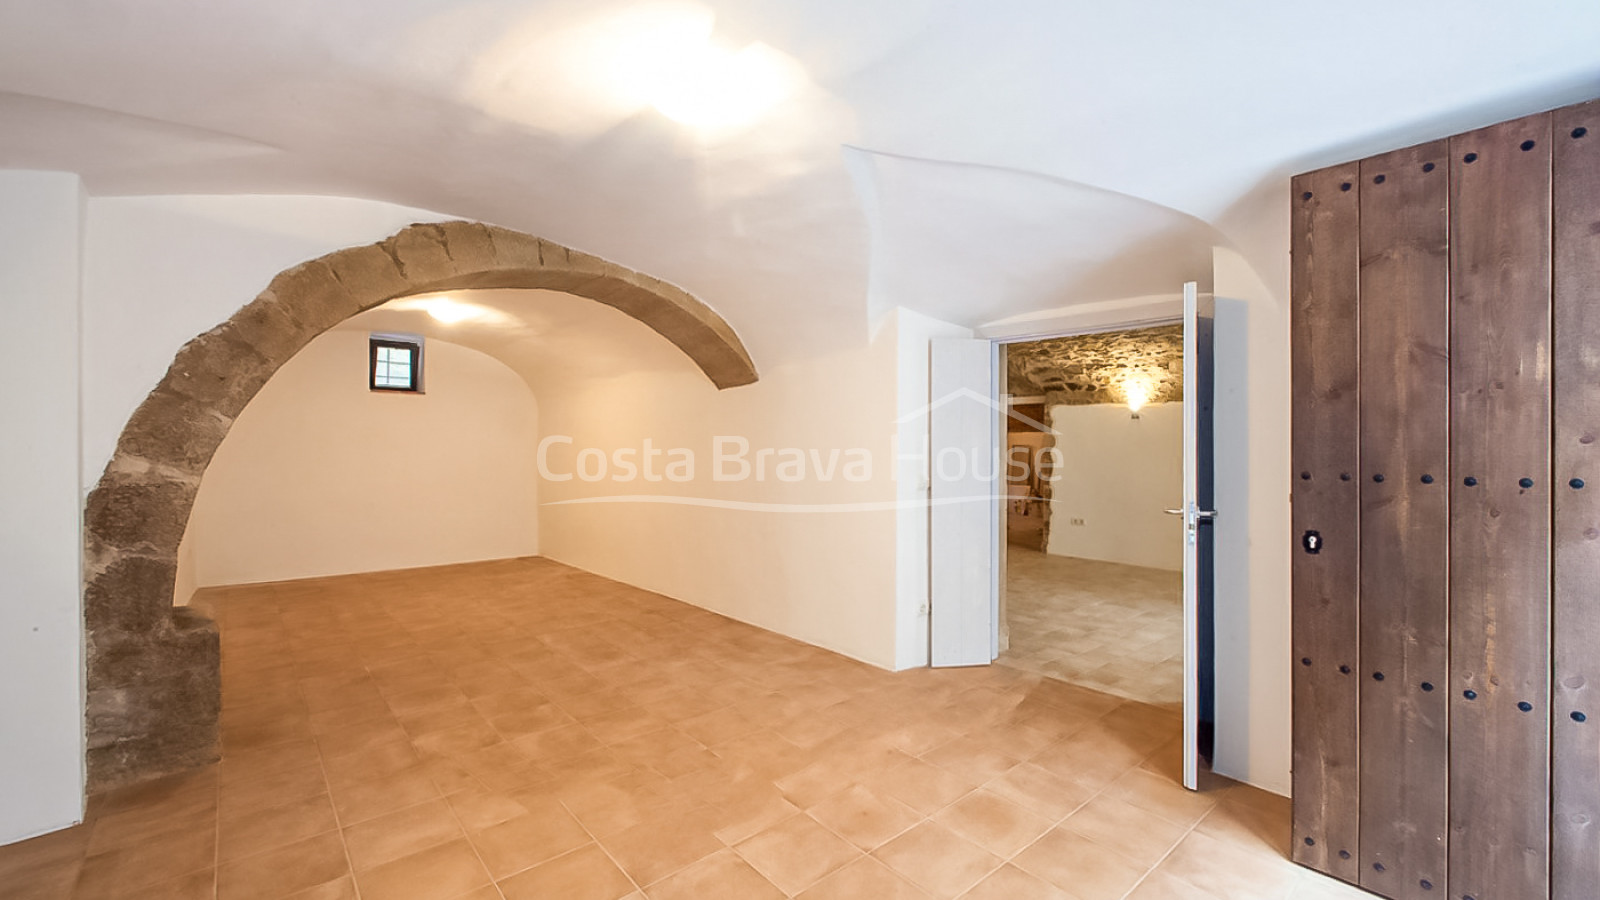 Casa de pueblo restaurada y modernizada en venta en Corçà